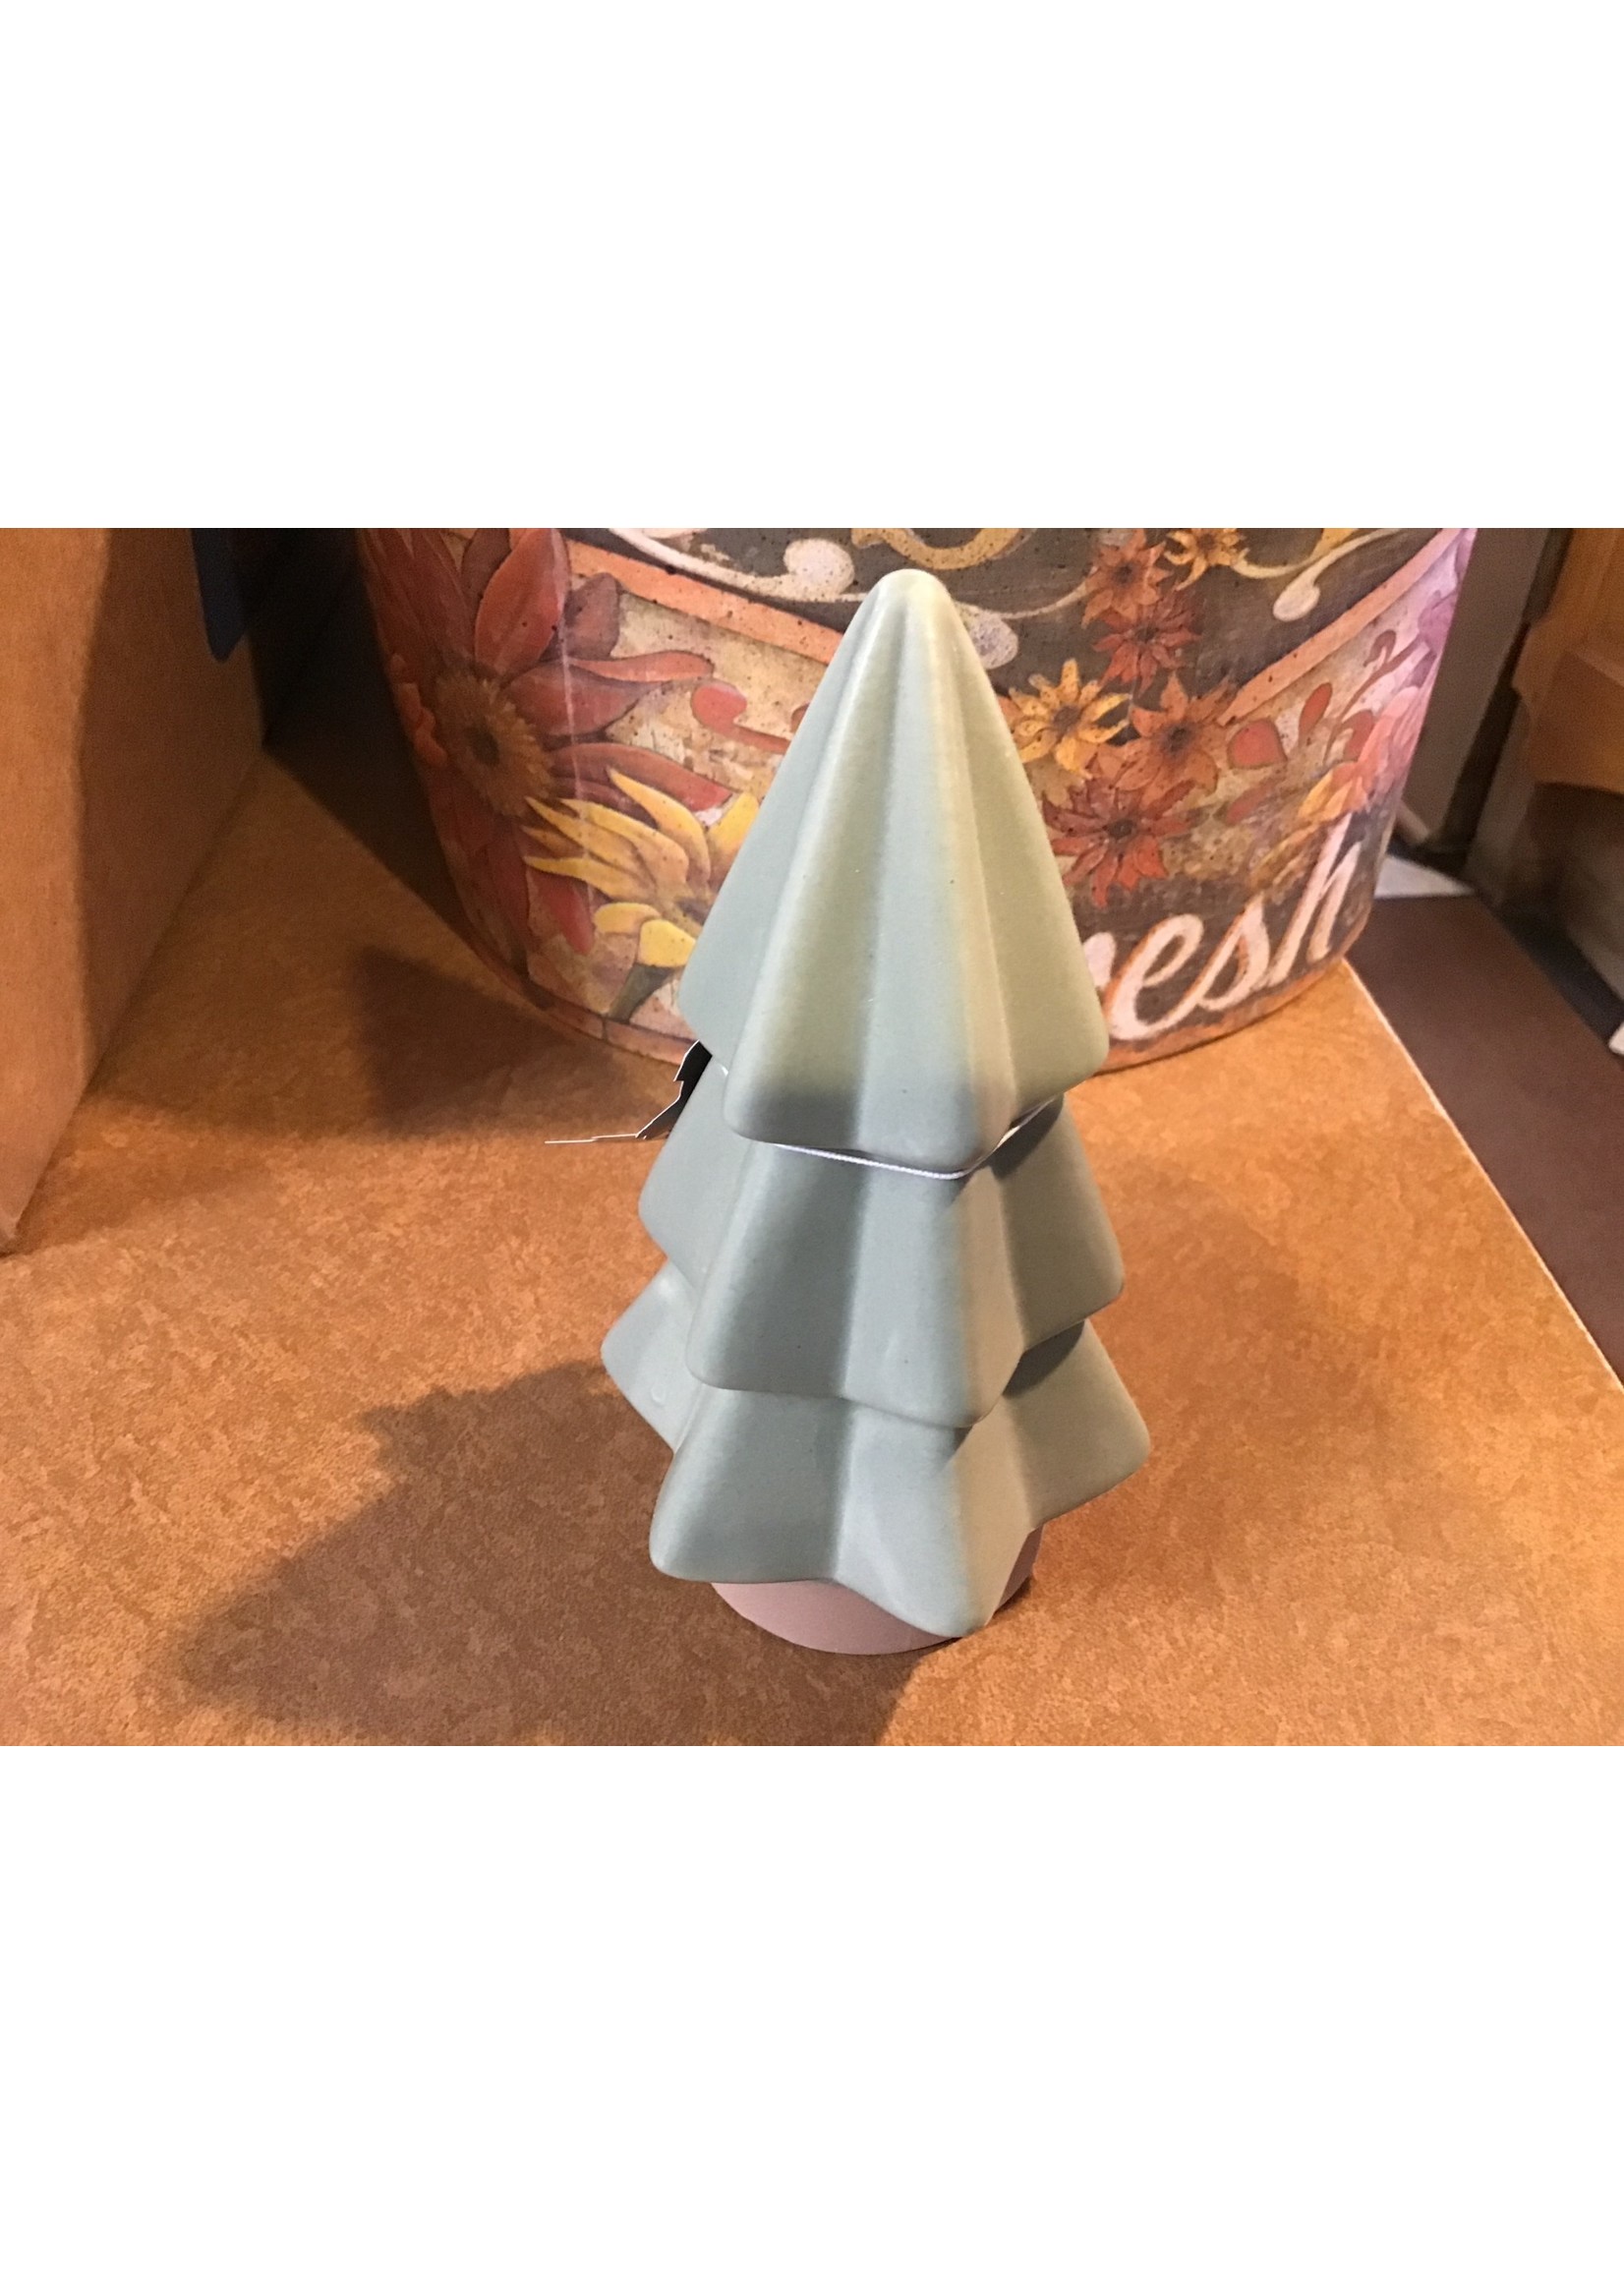 Medium Ceramic Tree-Green 6”